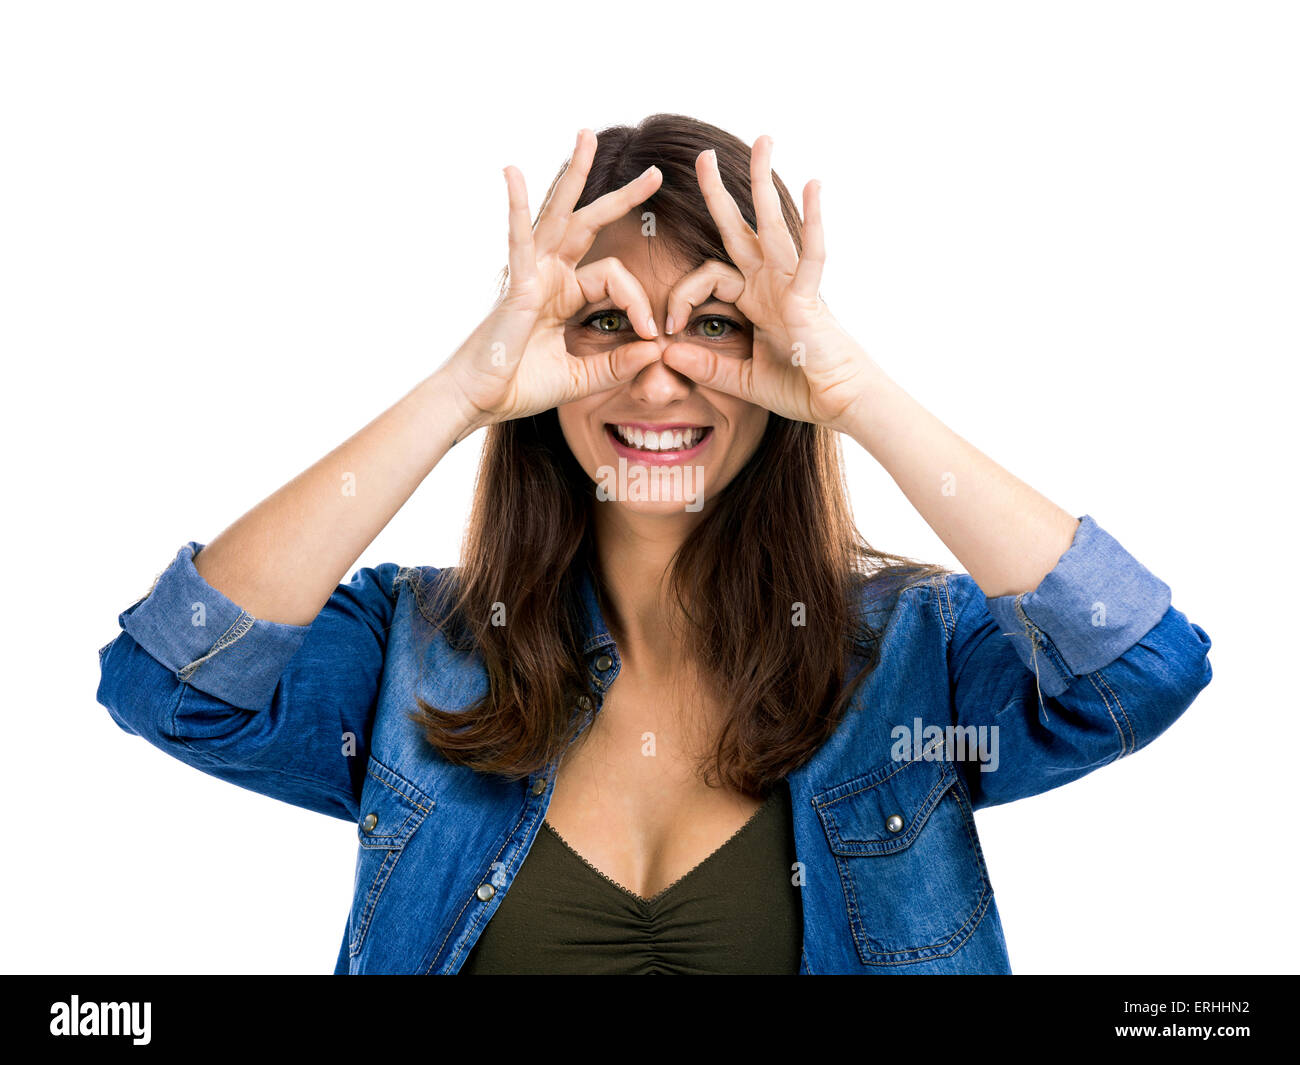 Bella donna che fa una buffa il viso con le mani sugli occhi, isolate su uno sfondo bianco Foto Stock